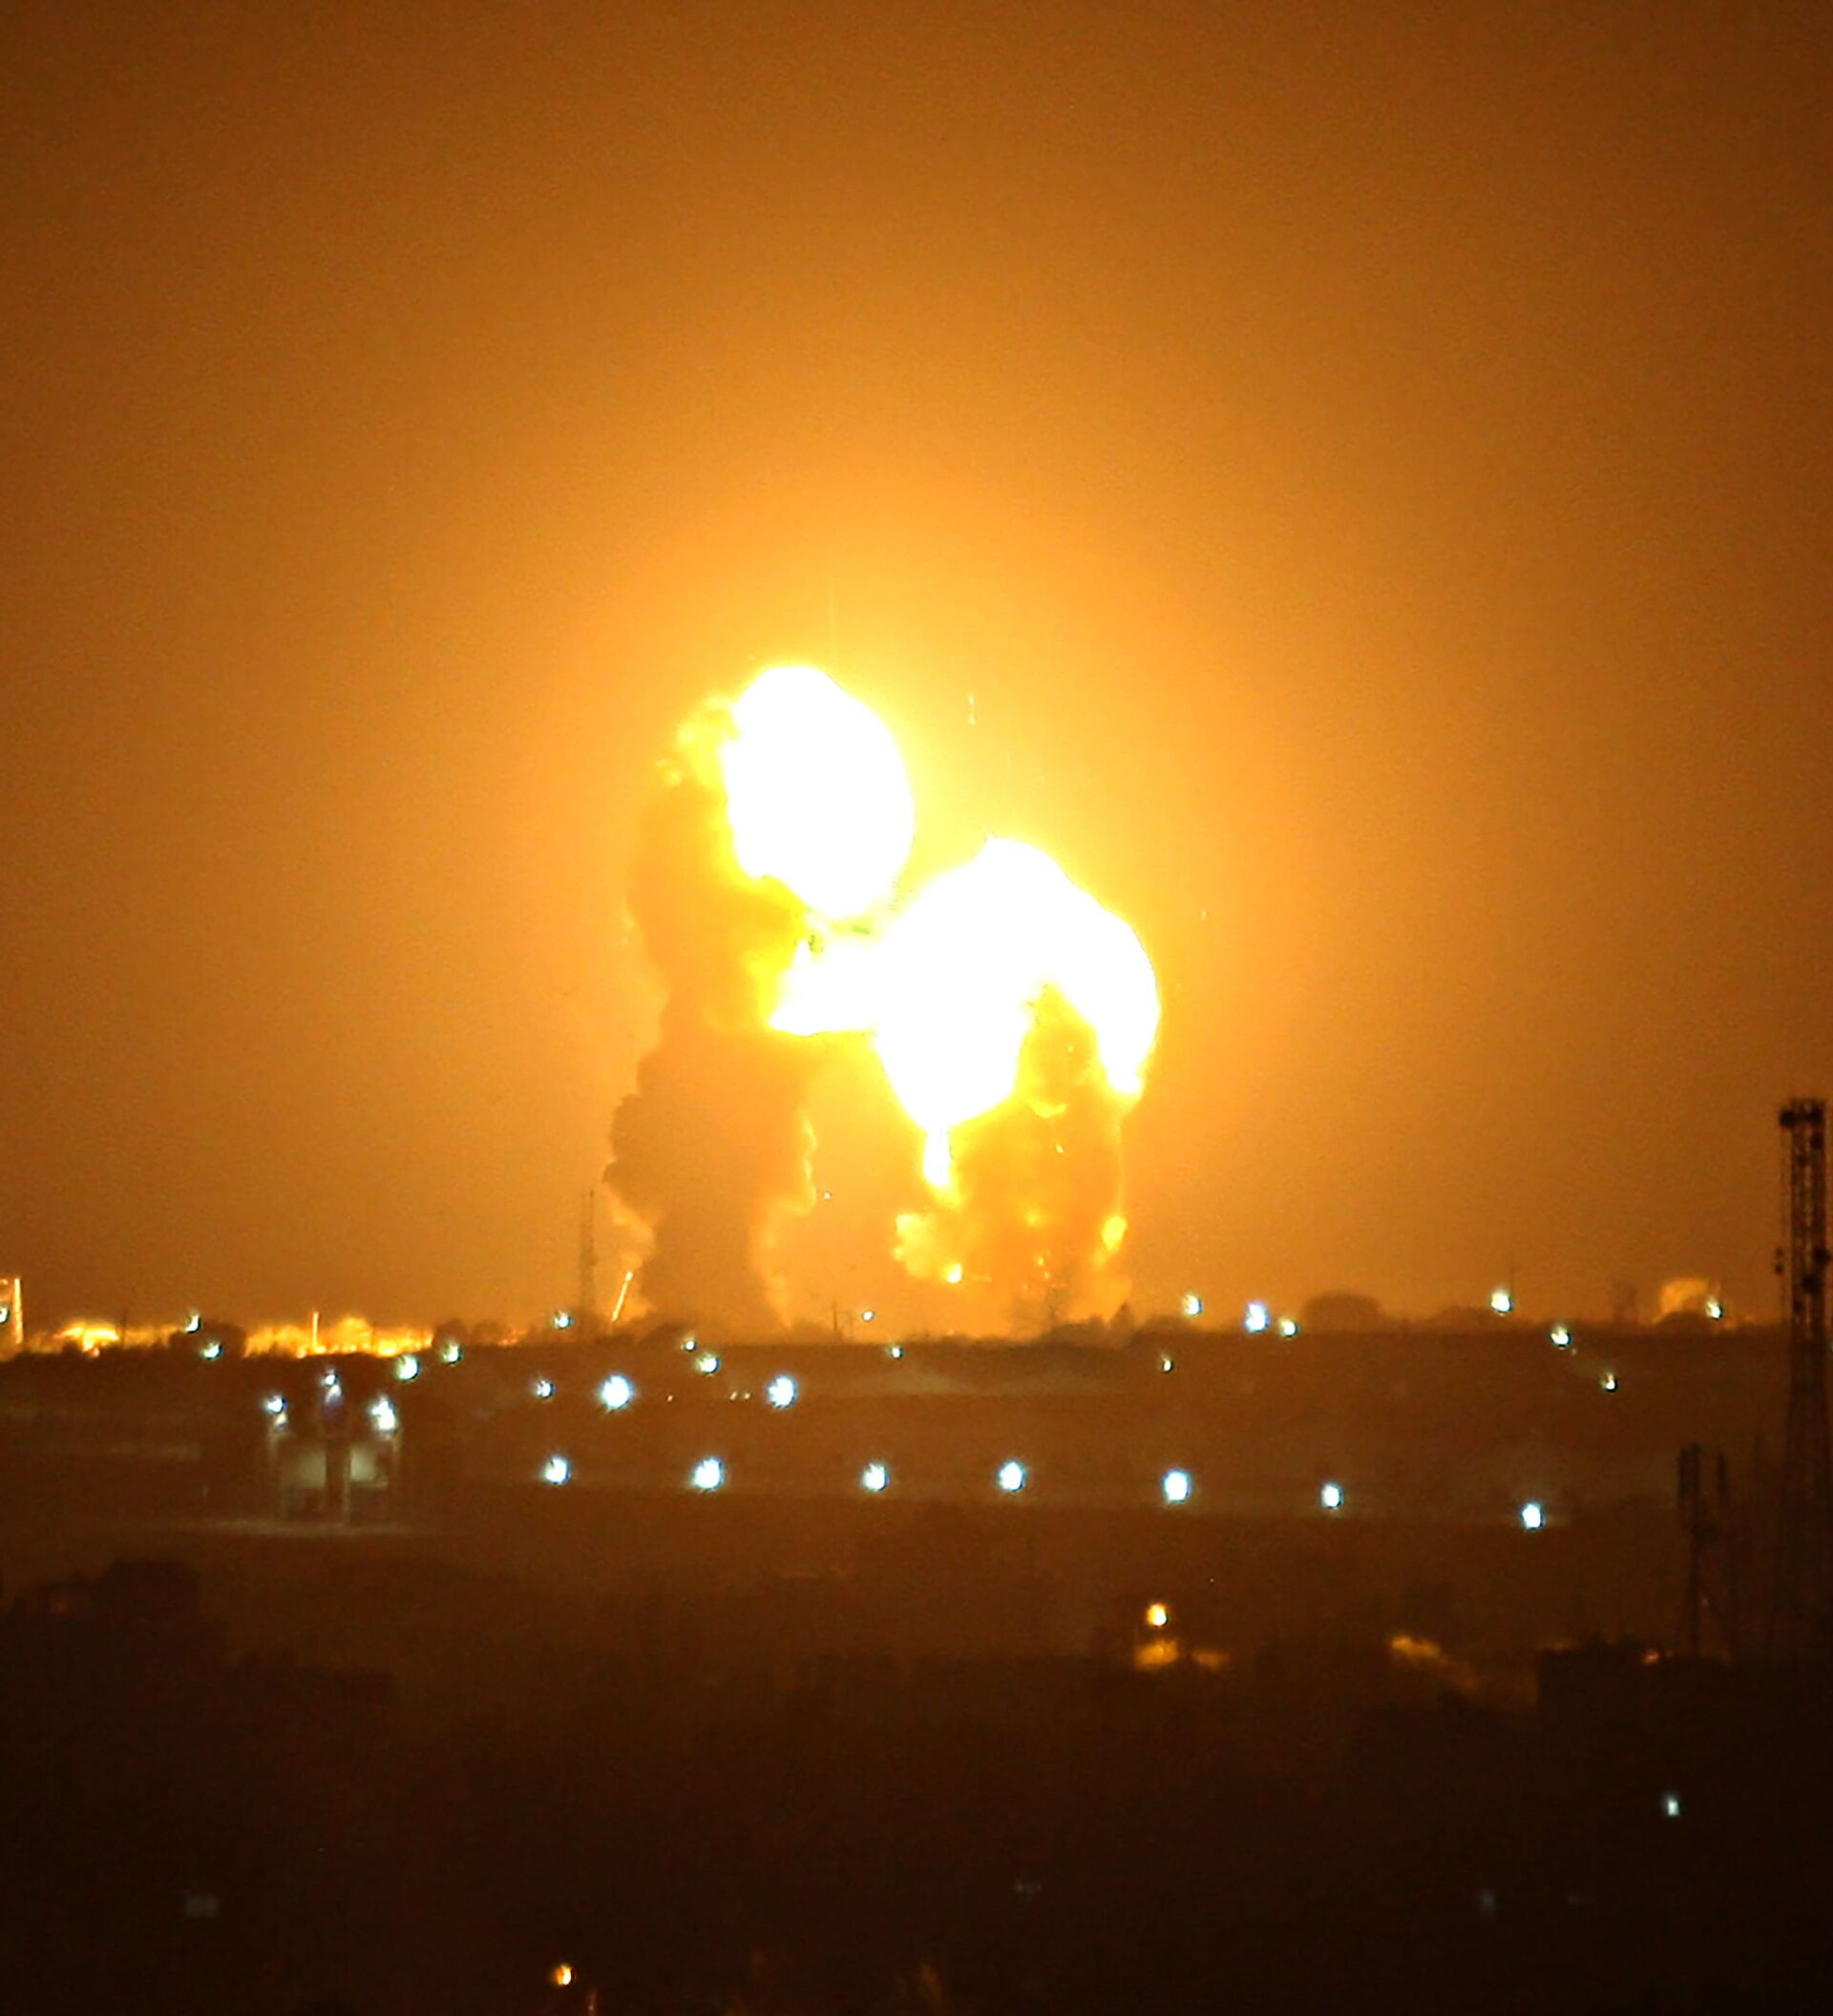 又一张靓到天际的 哈马斯火箭弹VS 铁穹 | 涨姿势